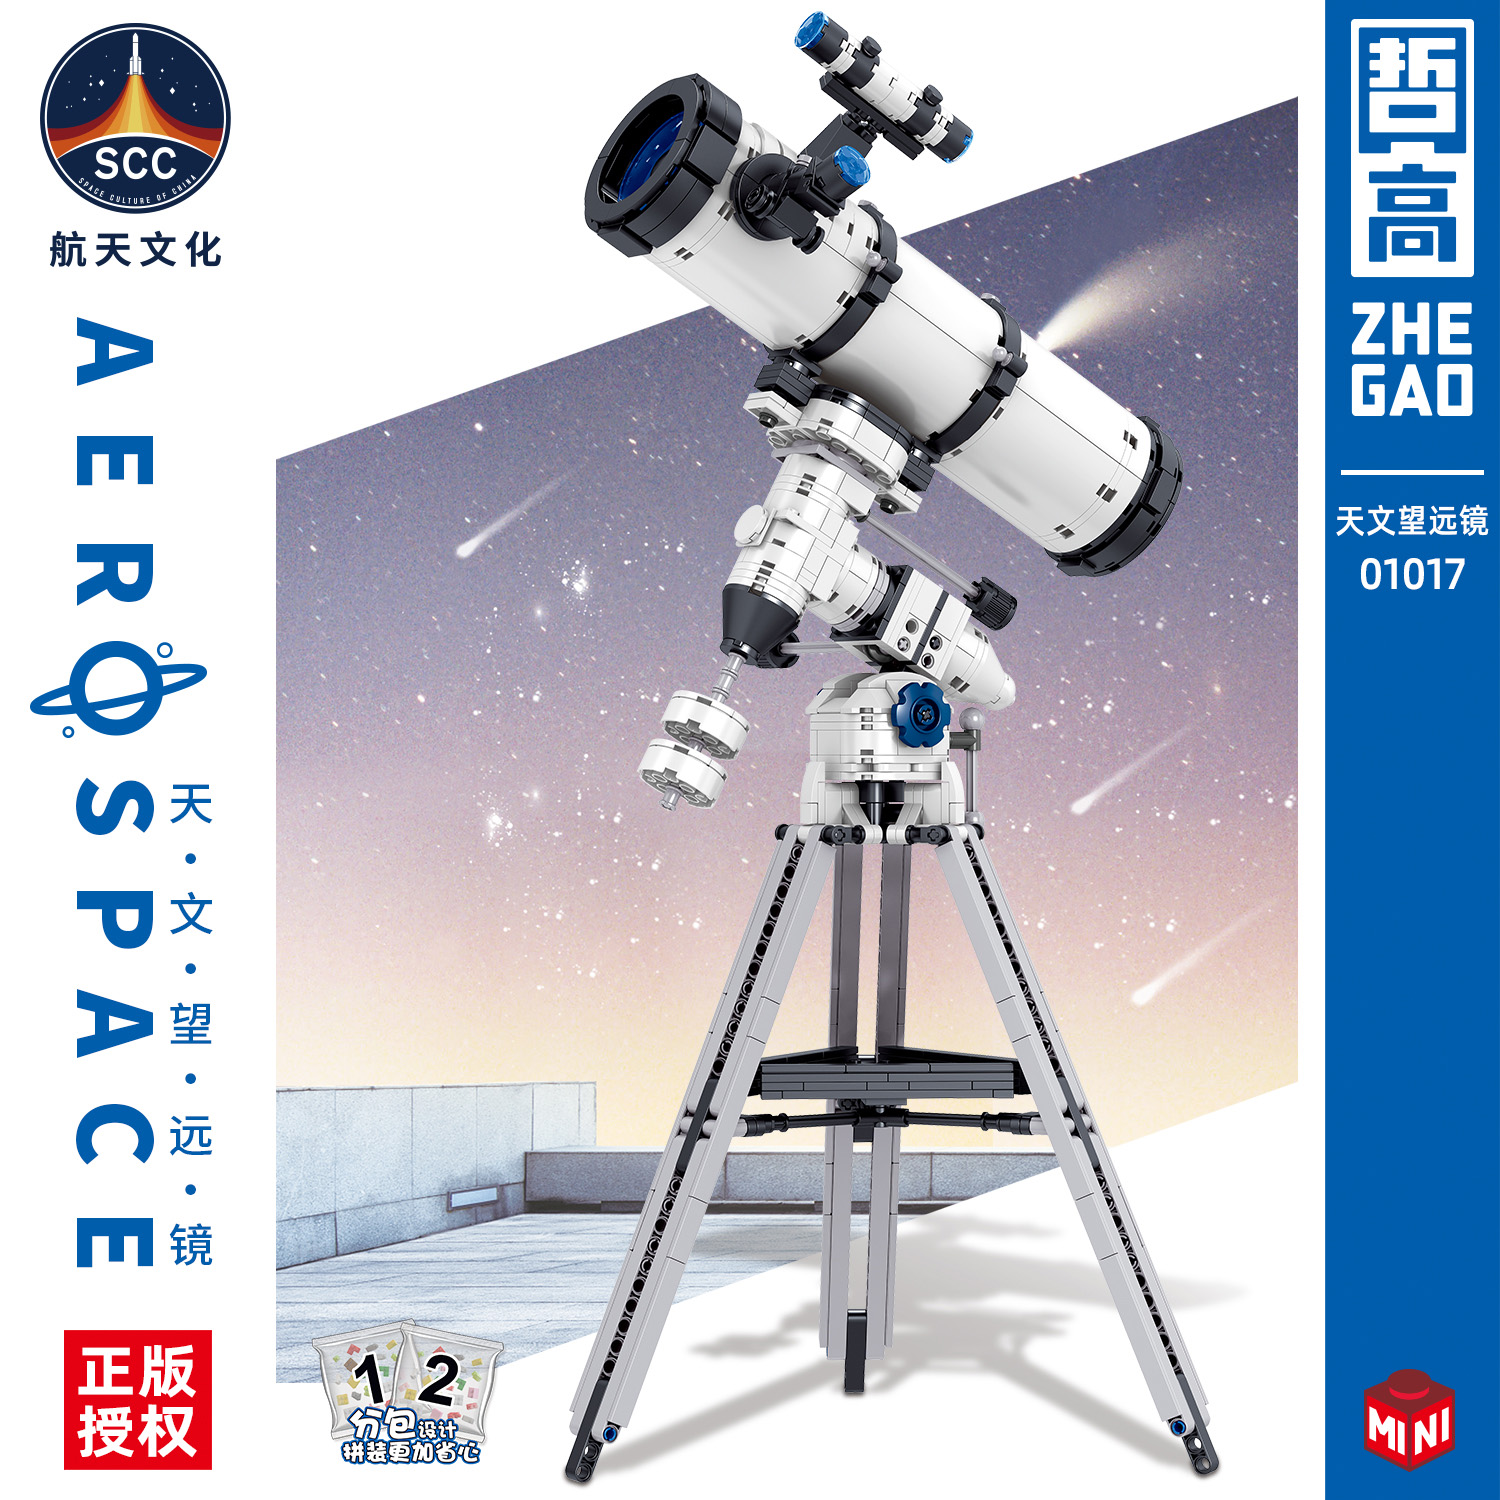 中国积木天文望远镜仿真模型摆件航天益智儿童拼装男孩玩具礼物